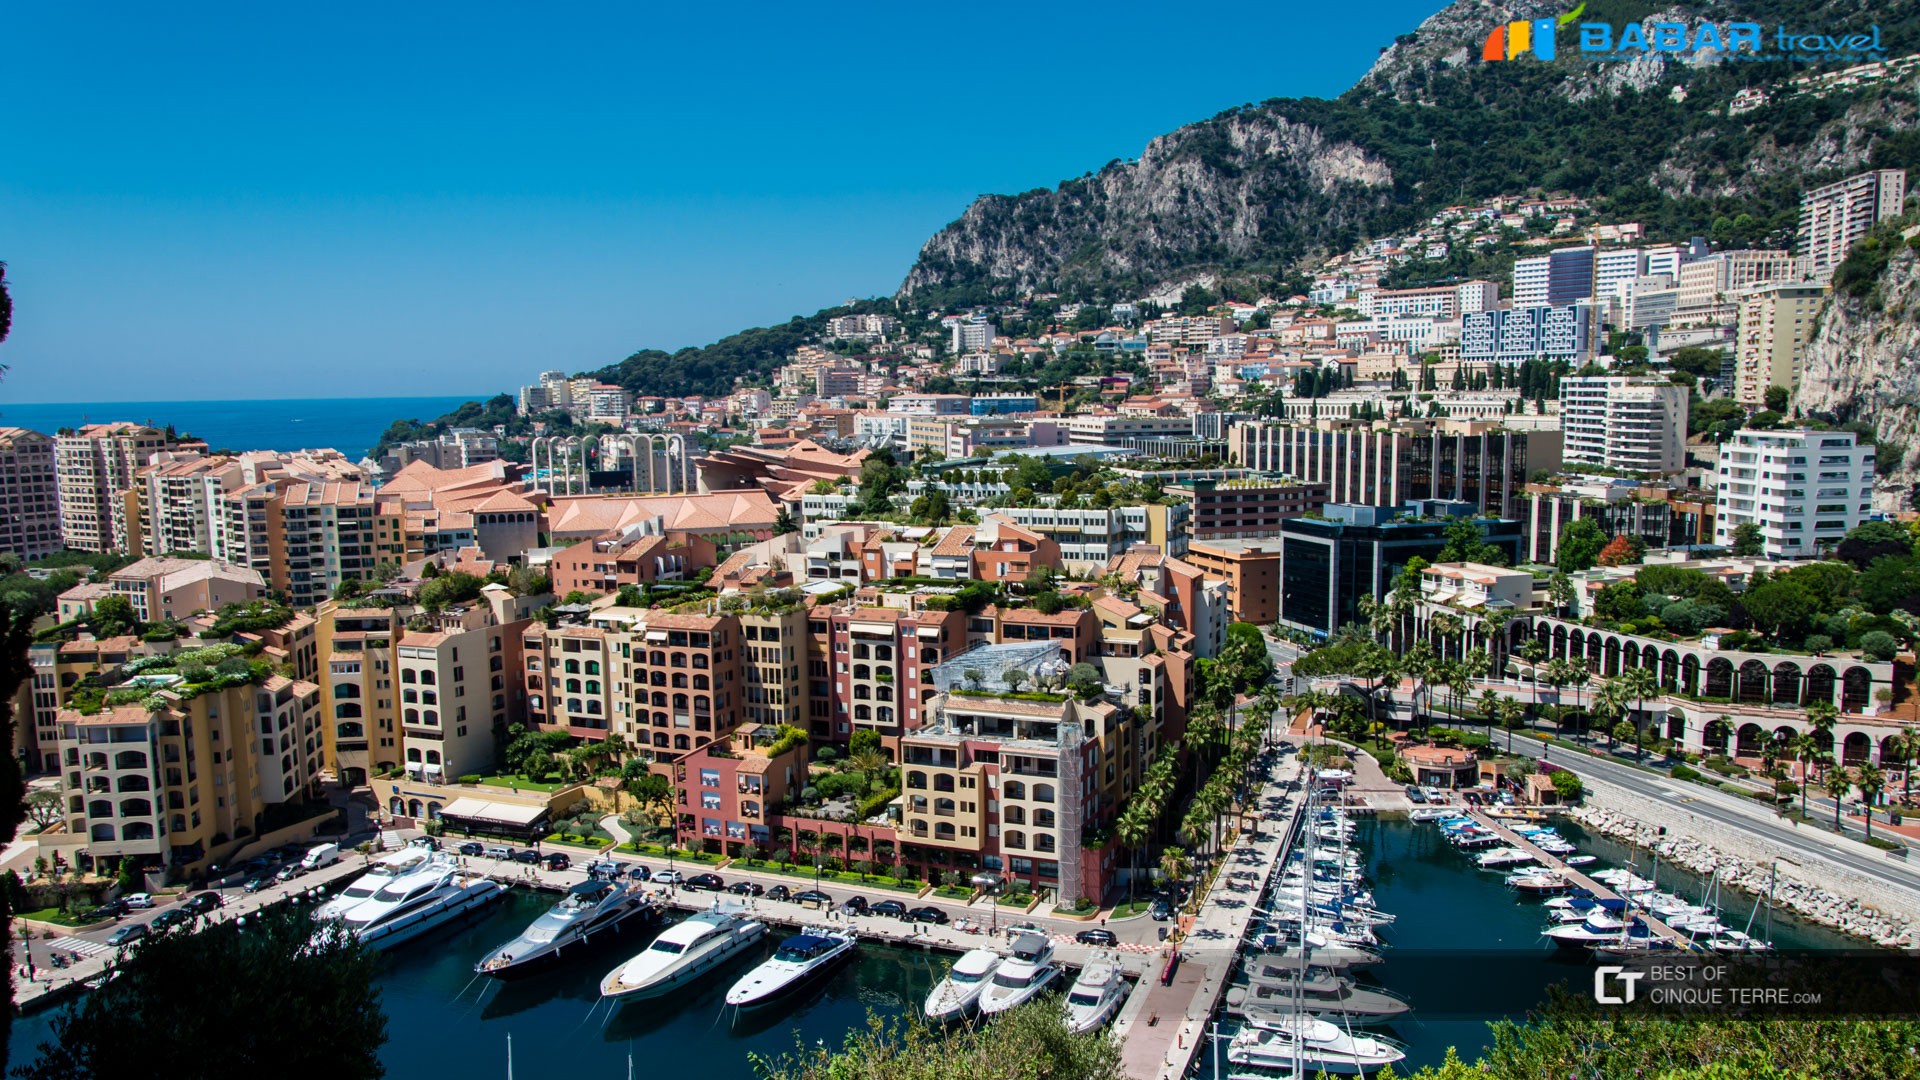 Monaco - tiểu quốc giàu có, xinh đẹp bậc nhất châu Âu